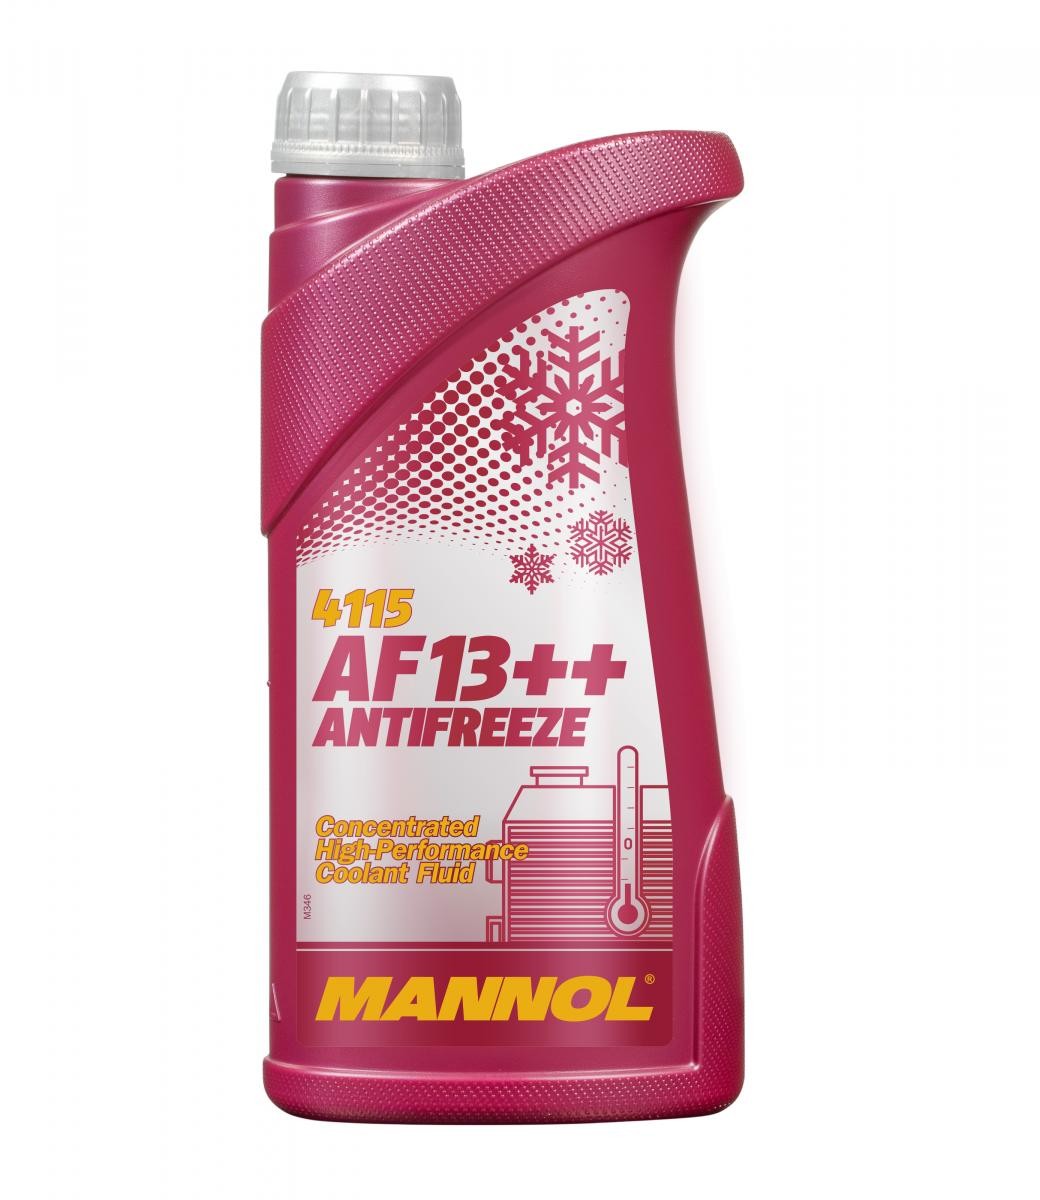 YAMAHA RD Kühlmittel G12 Rot, 1l, -38(50/50) MANNOL AF13++, High-performance MN4115-1